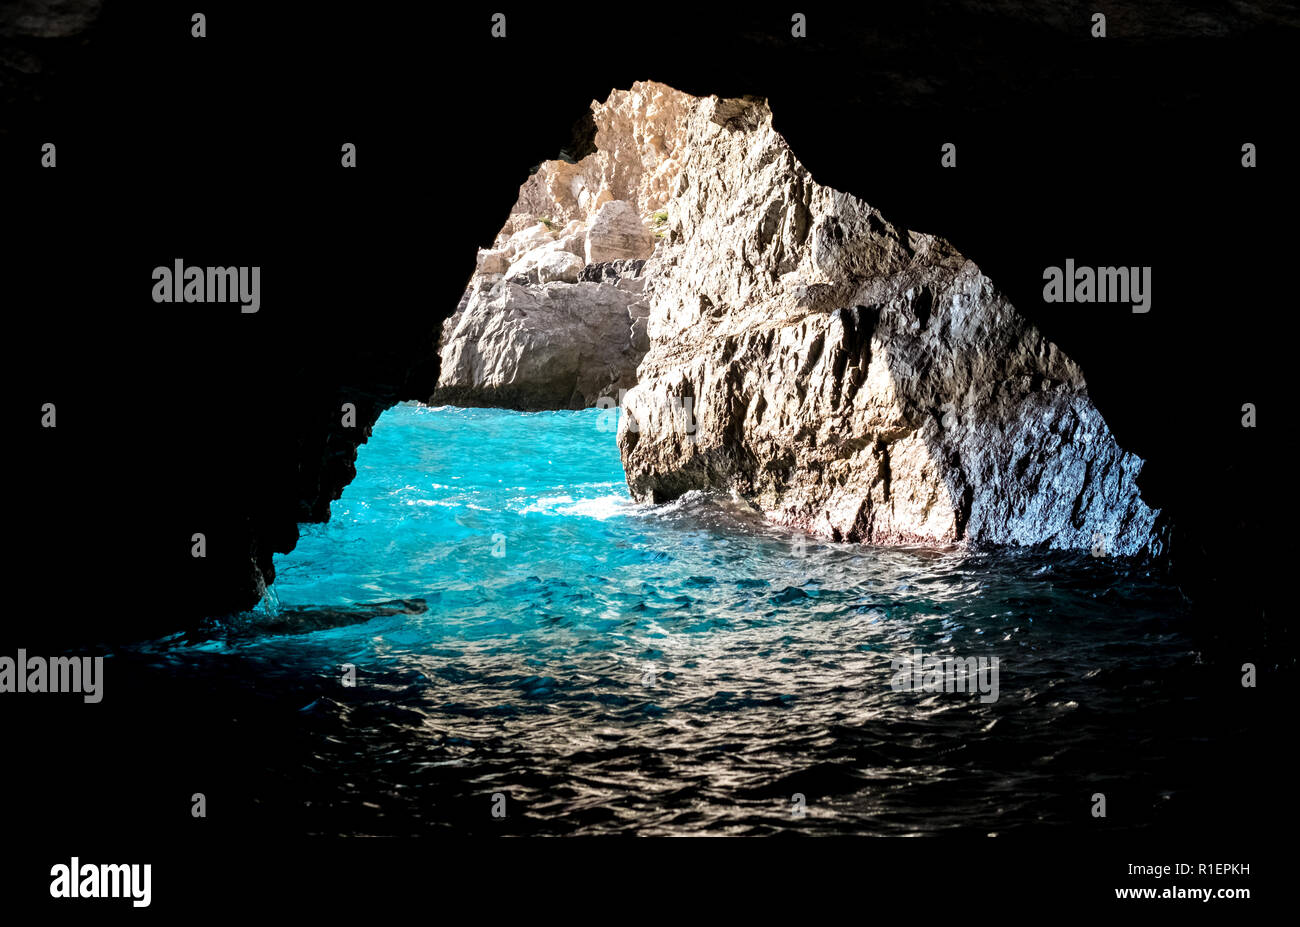 Green Grotto (Grotta Verde), Capri